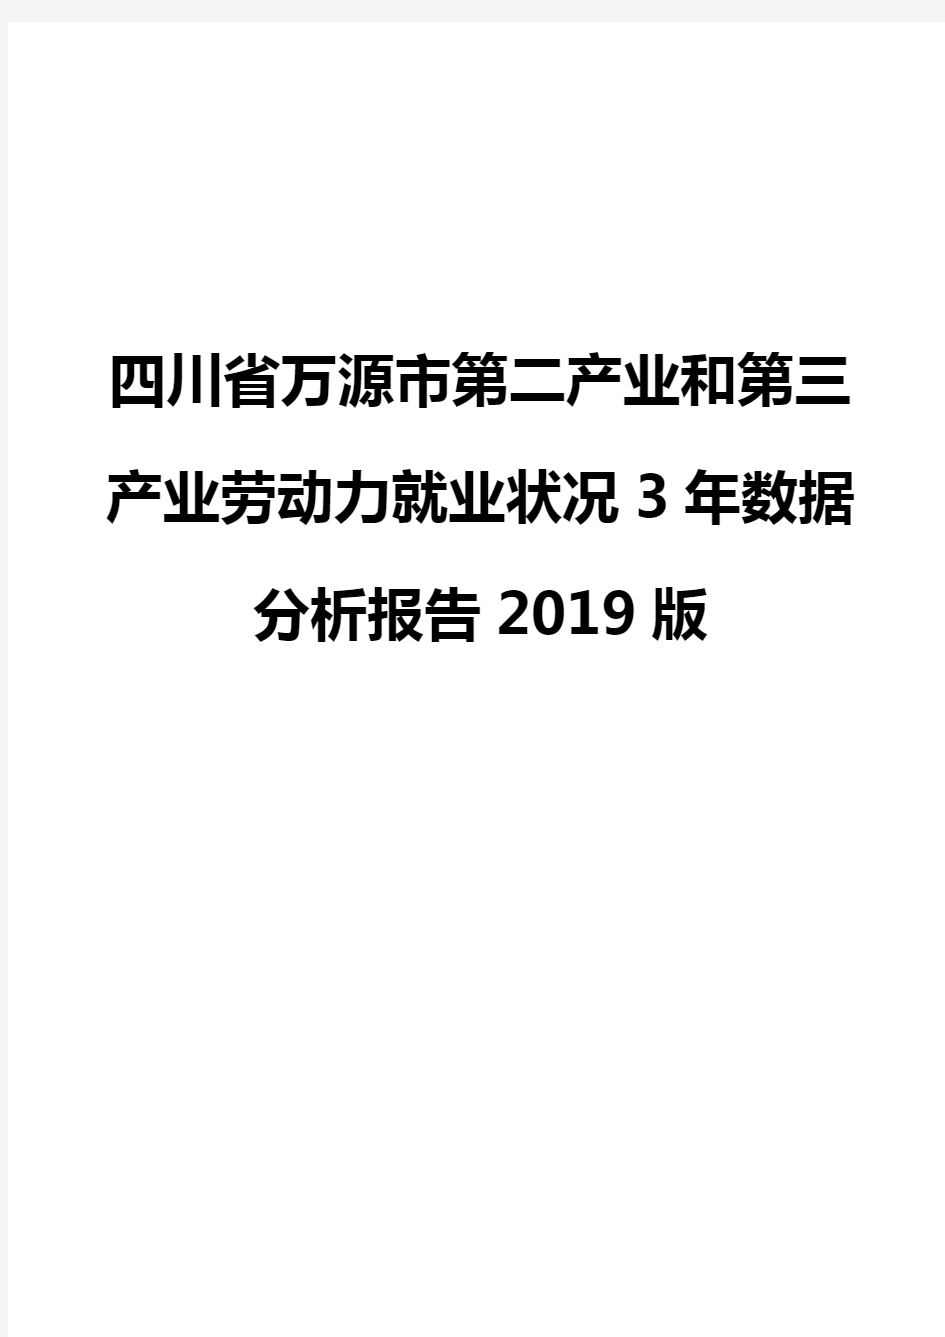 四川省万源市第二产业和第三产业劳动力就业状况3年数据分析报告2019版